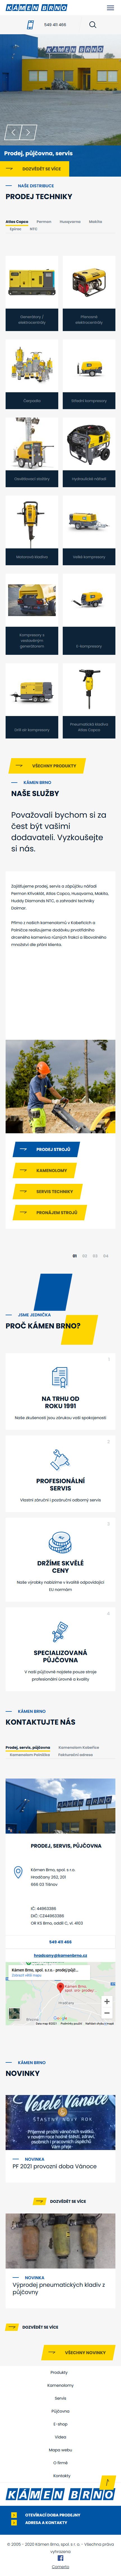 Tvorba nového webu Kamenbrno.cz - Screenshot mobilní verze